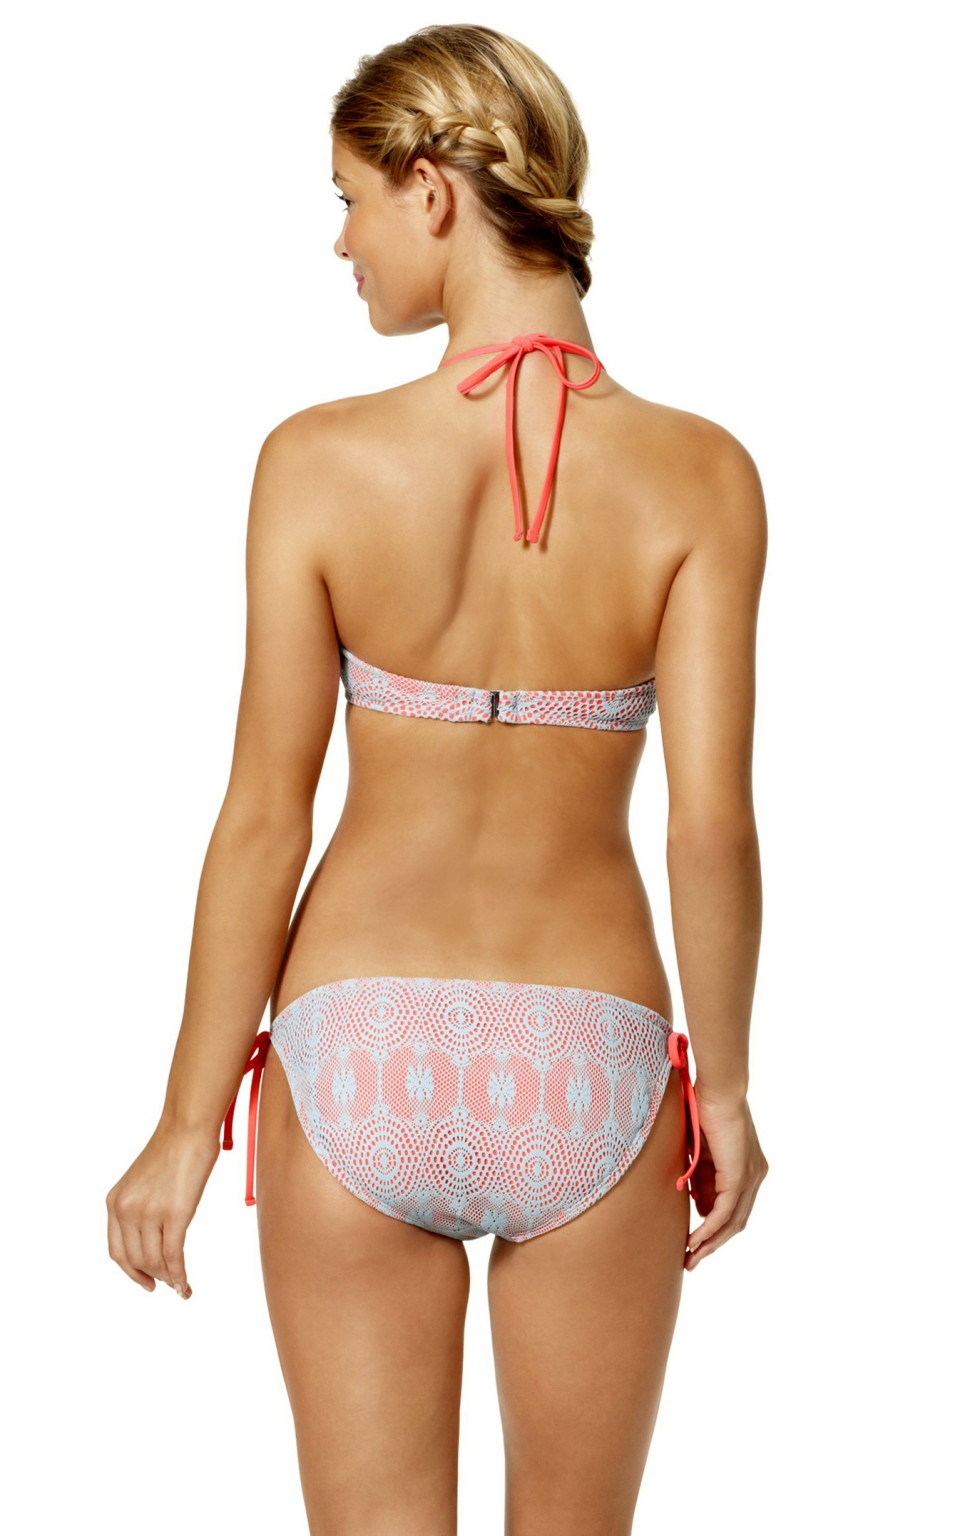 Danielle knudson in posa in bikini sexy collezione target 2015
 #75168940